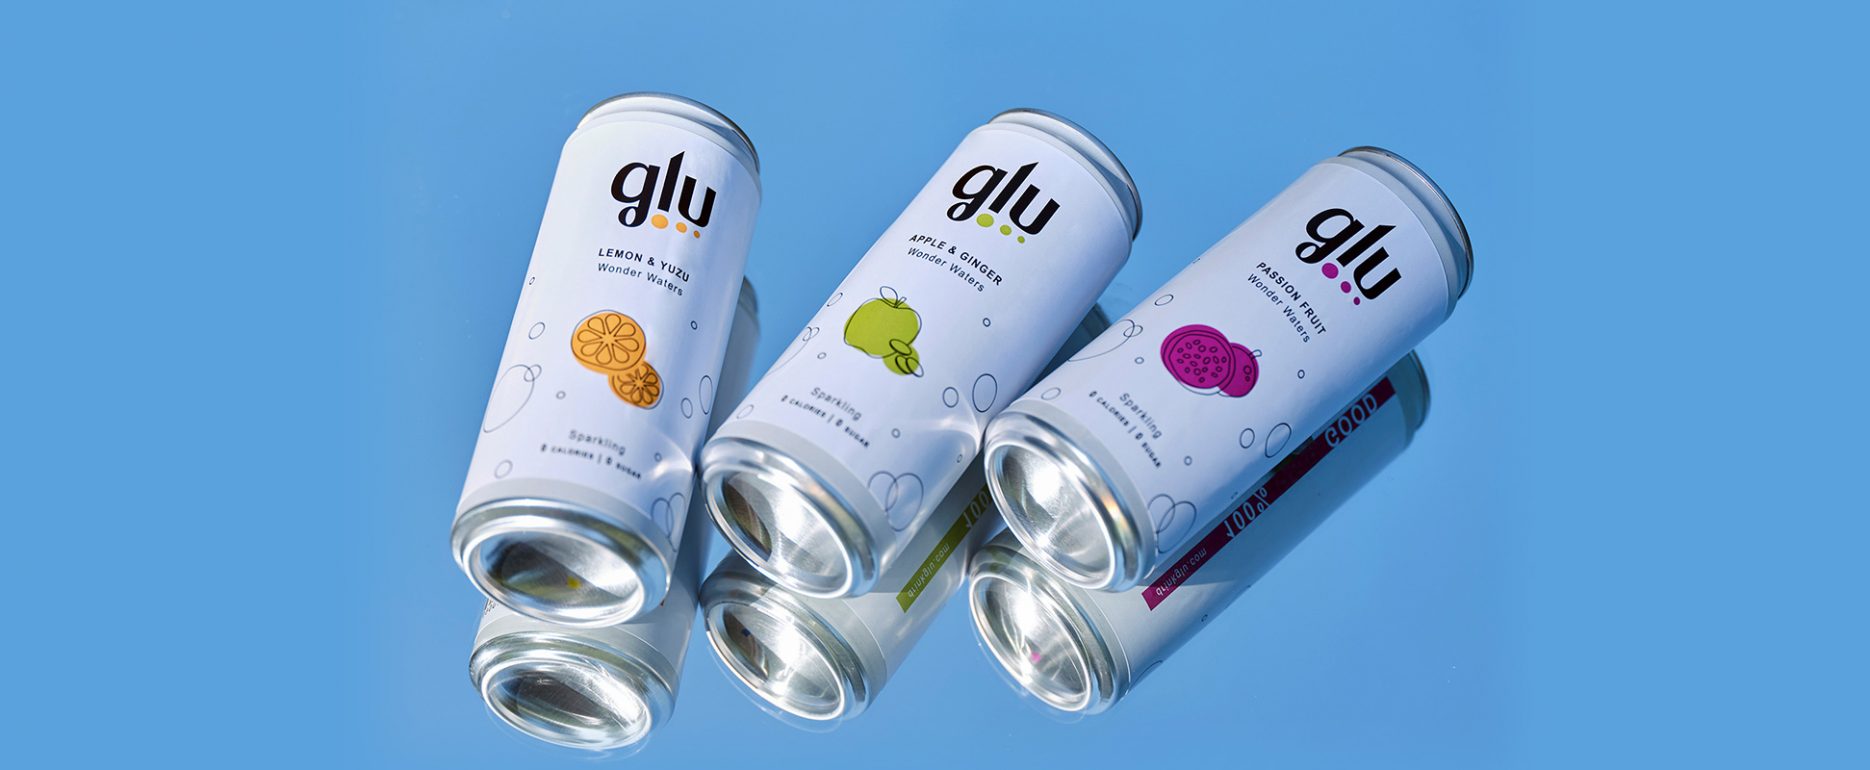 Jam Area case history Drink Glu, rebranding, start-up social, packaging e shooting